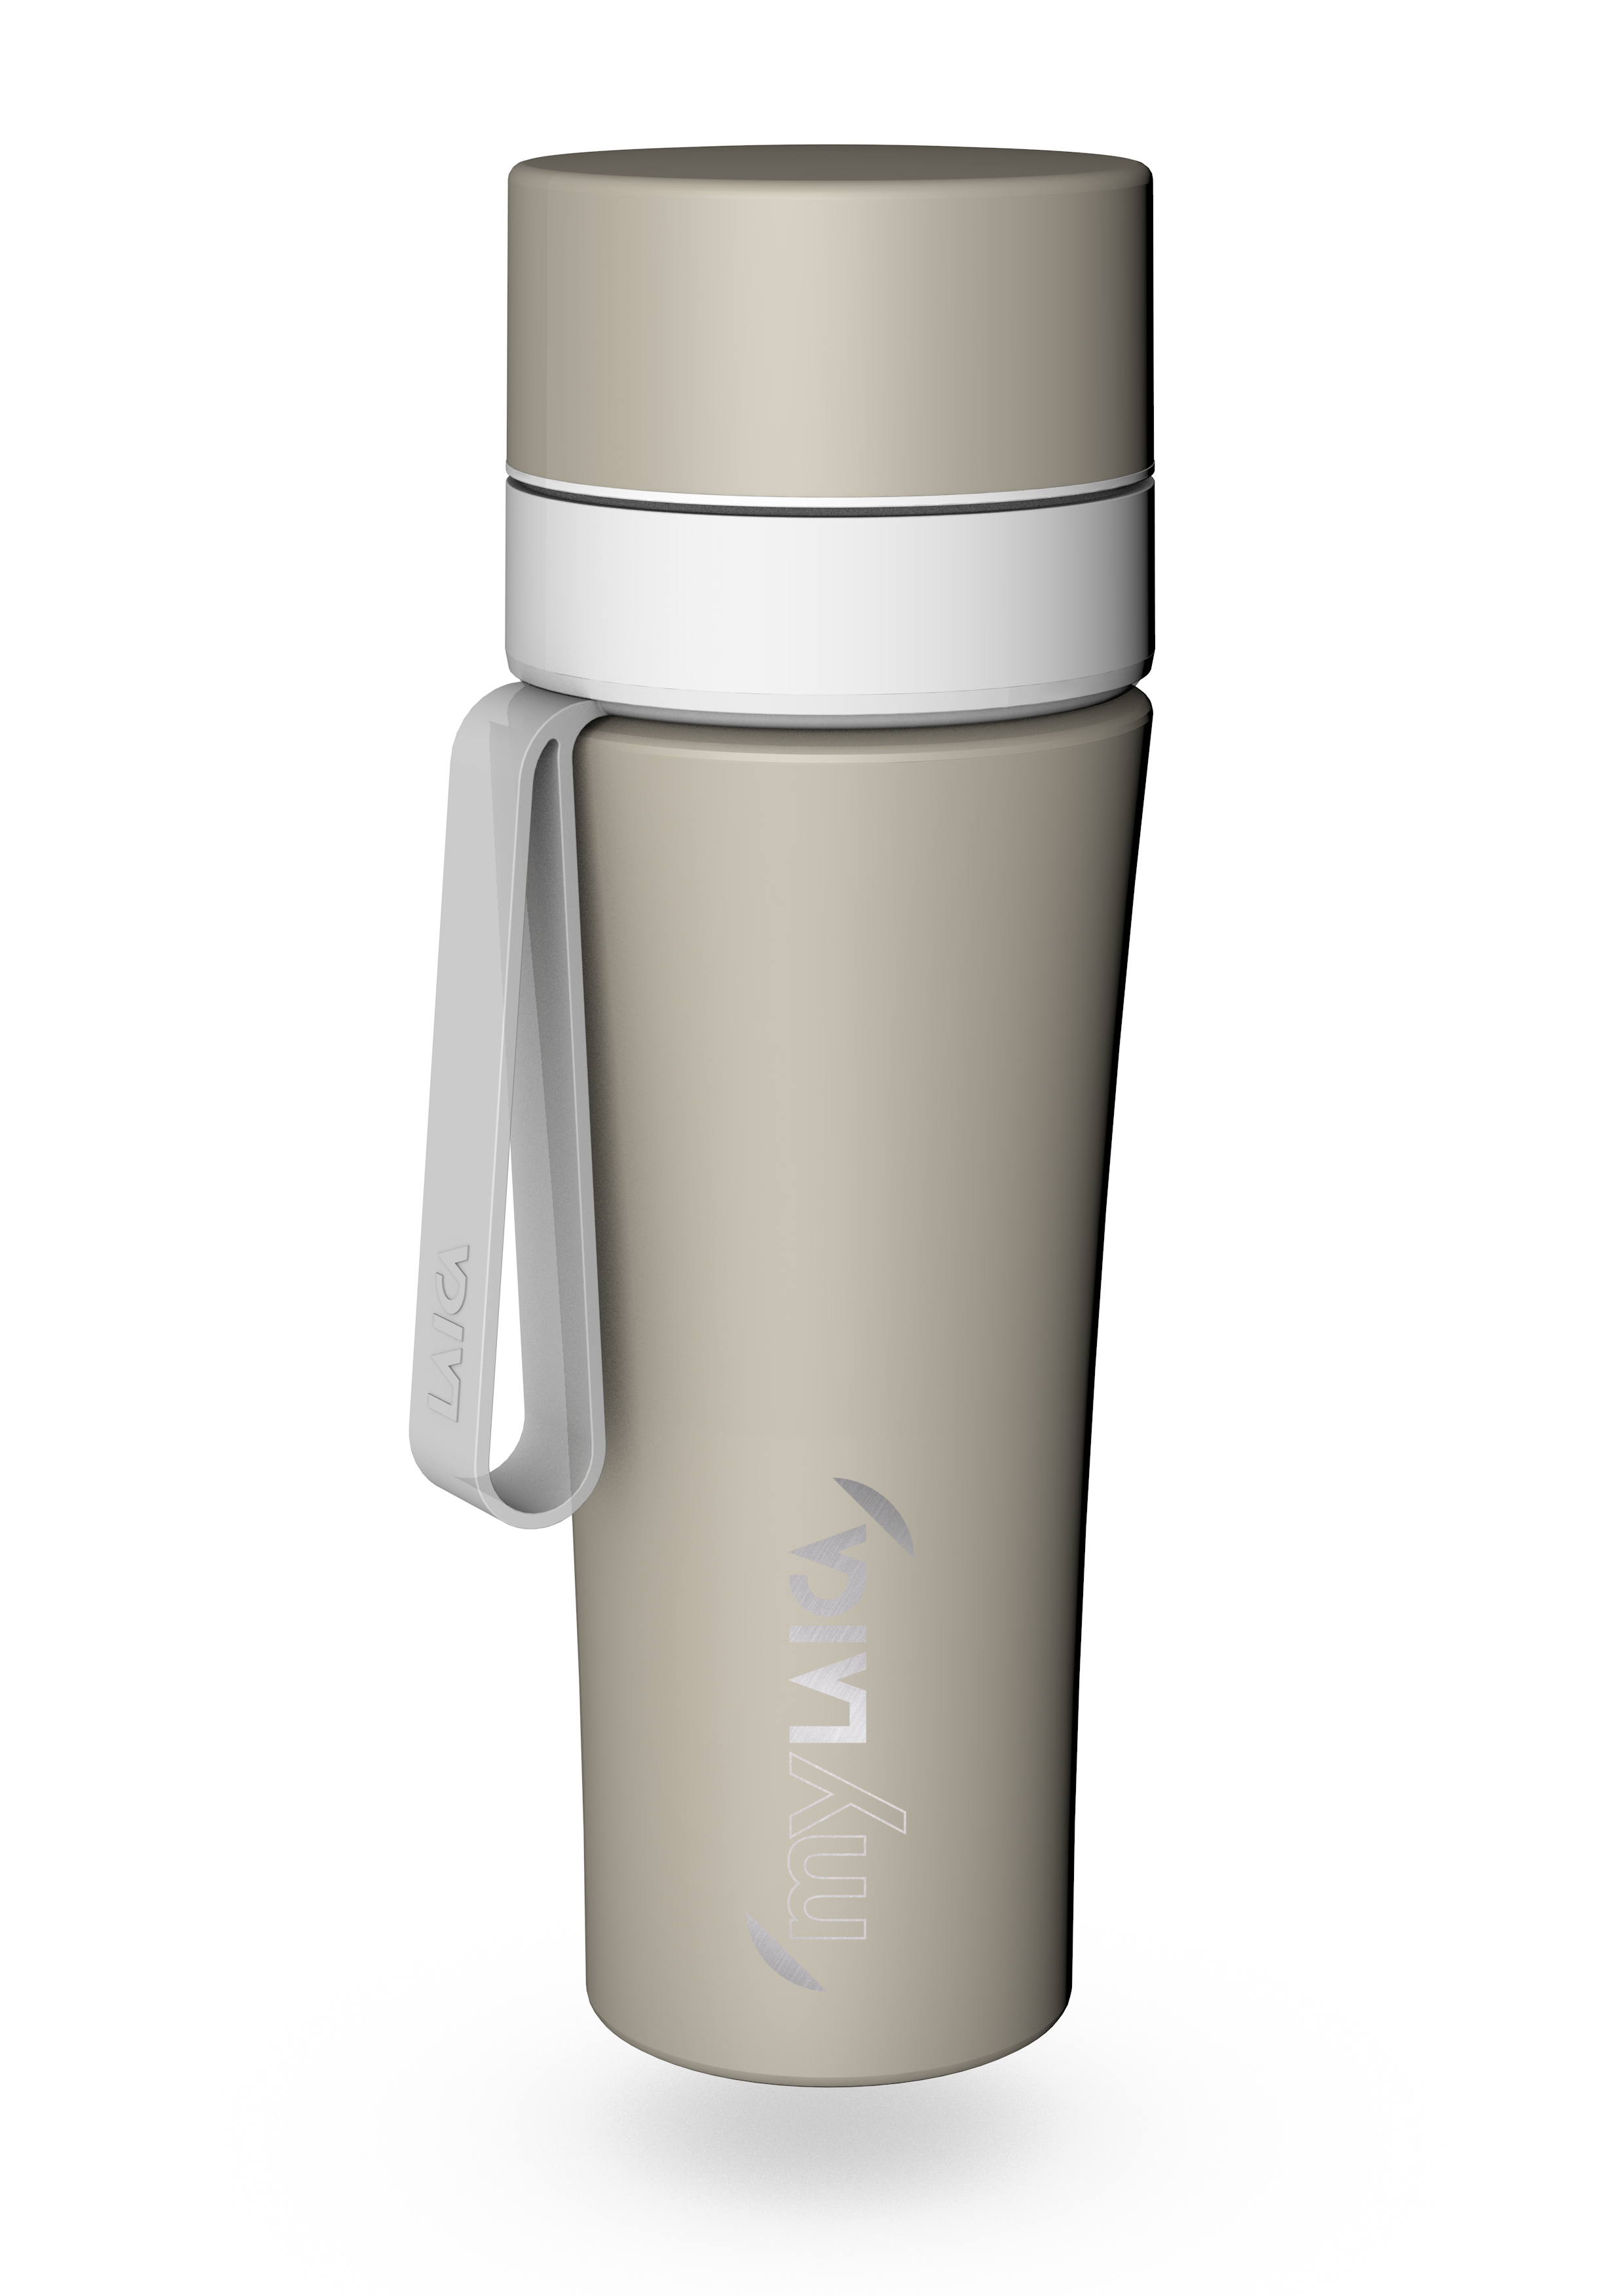 NOU: Sticlă filtrantă Sport myLaica, Inox, 0,55 litri, portabilă, laicashop.ro 2021